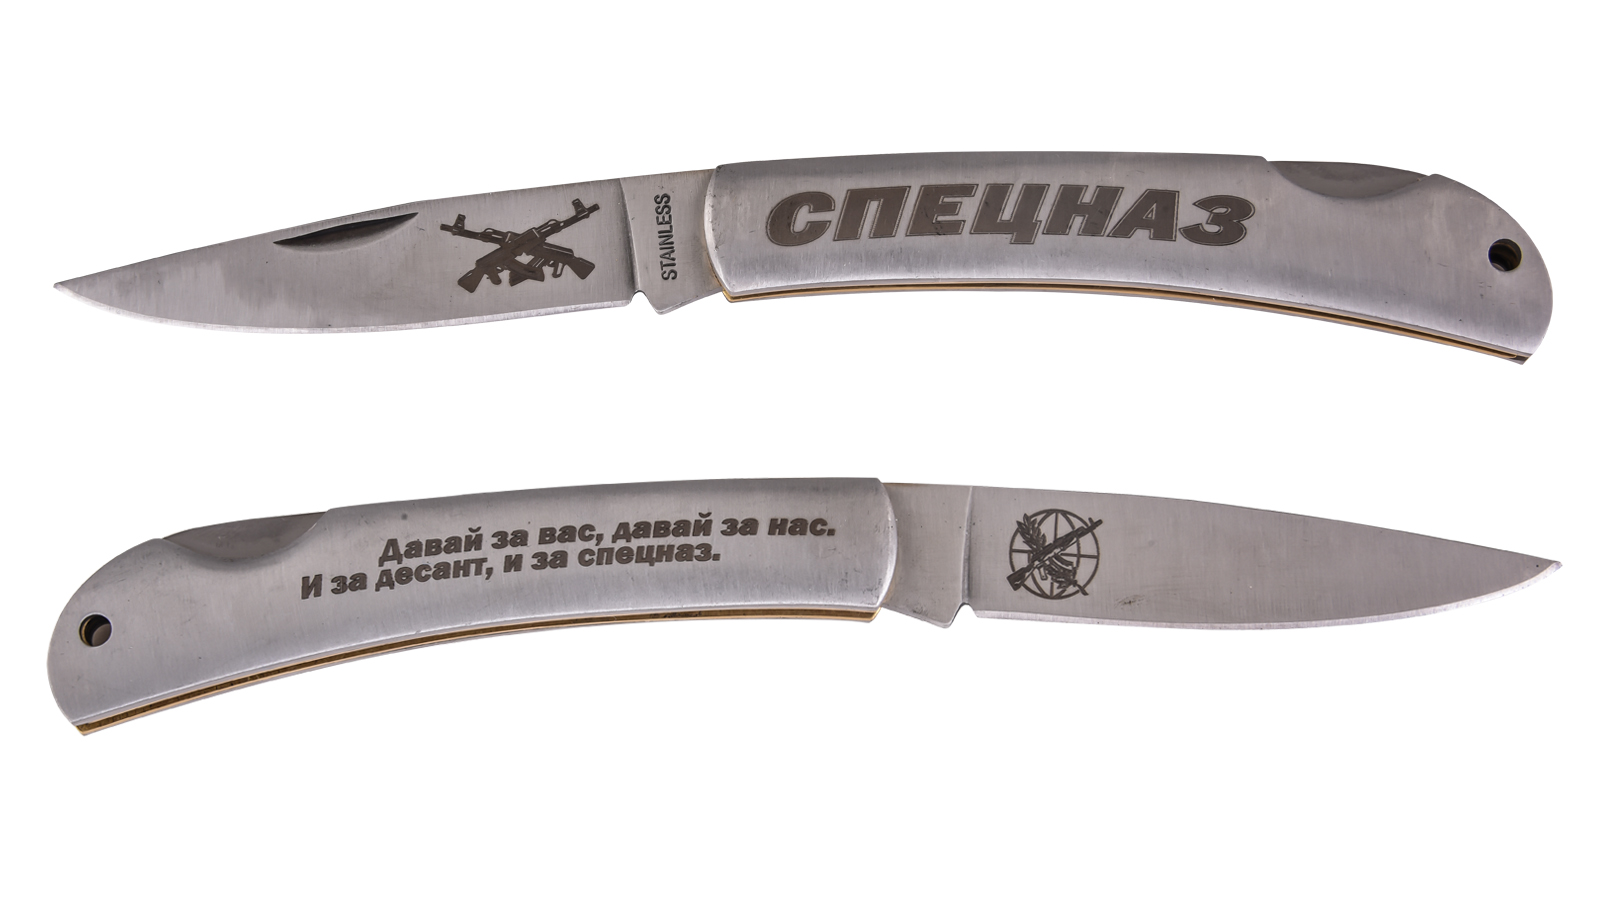 Выгодно купить достойный нож Спецназа складного типа в Военпро